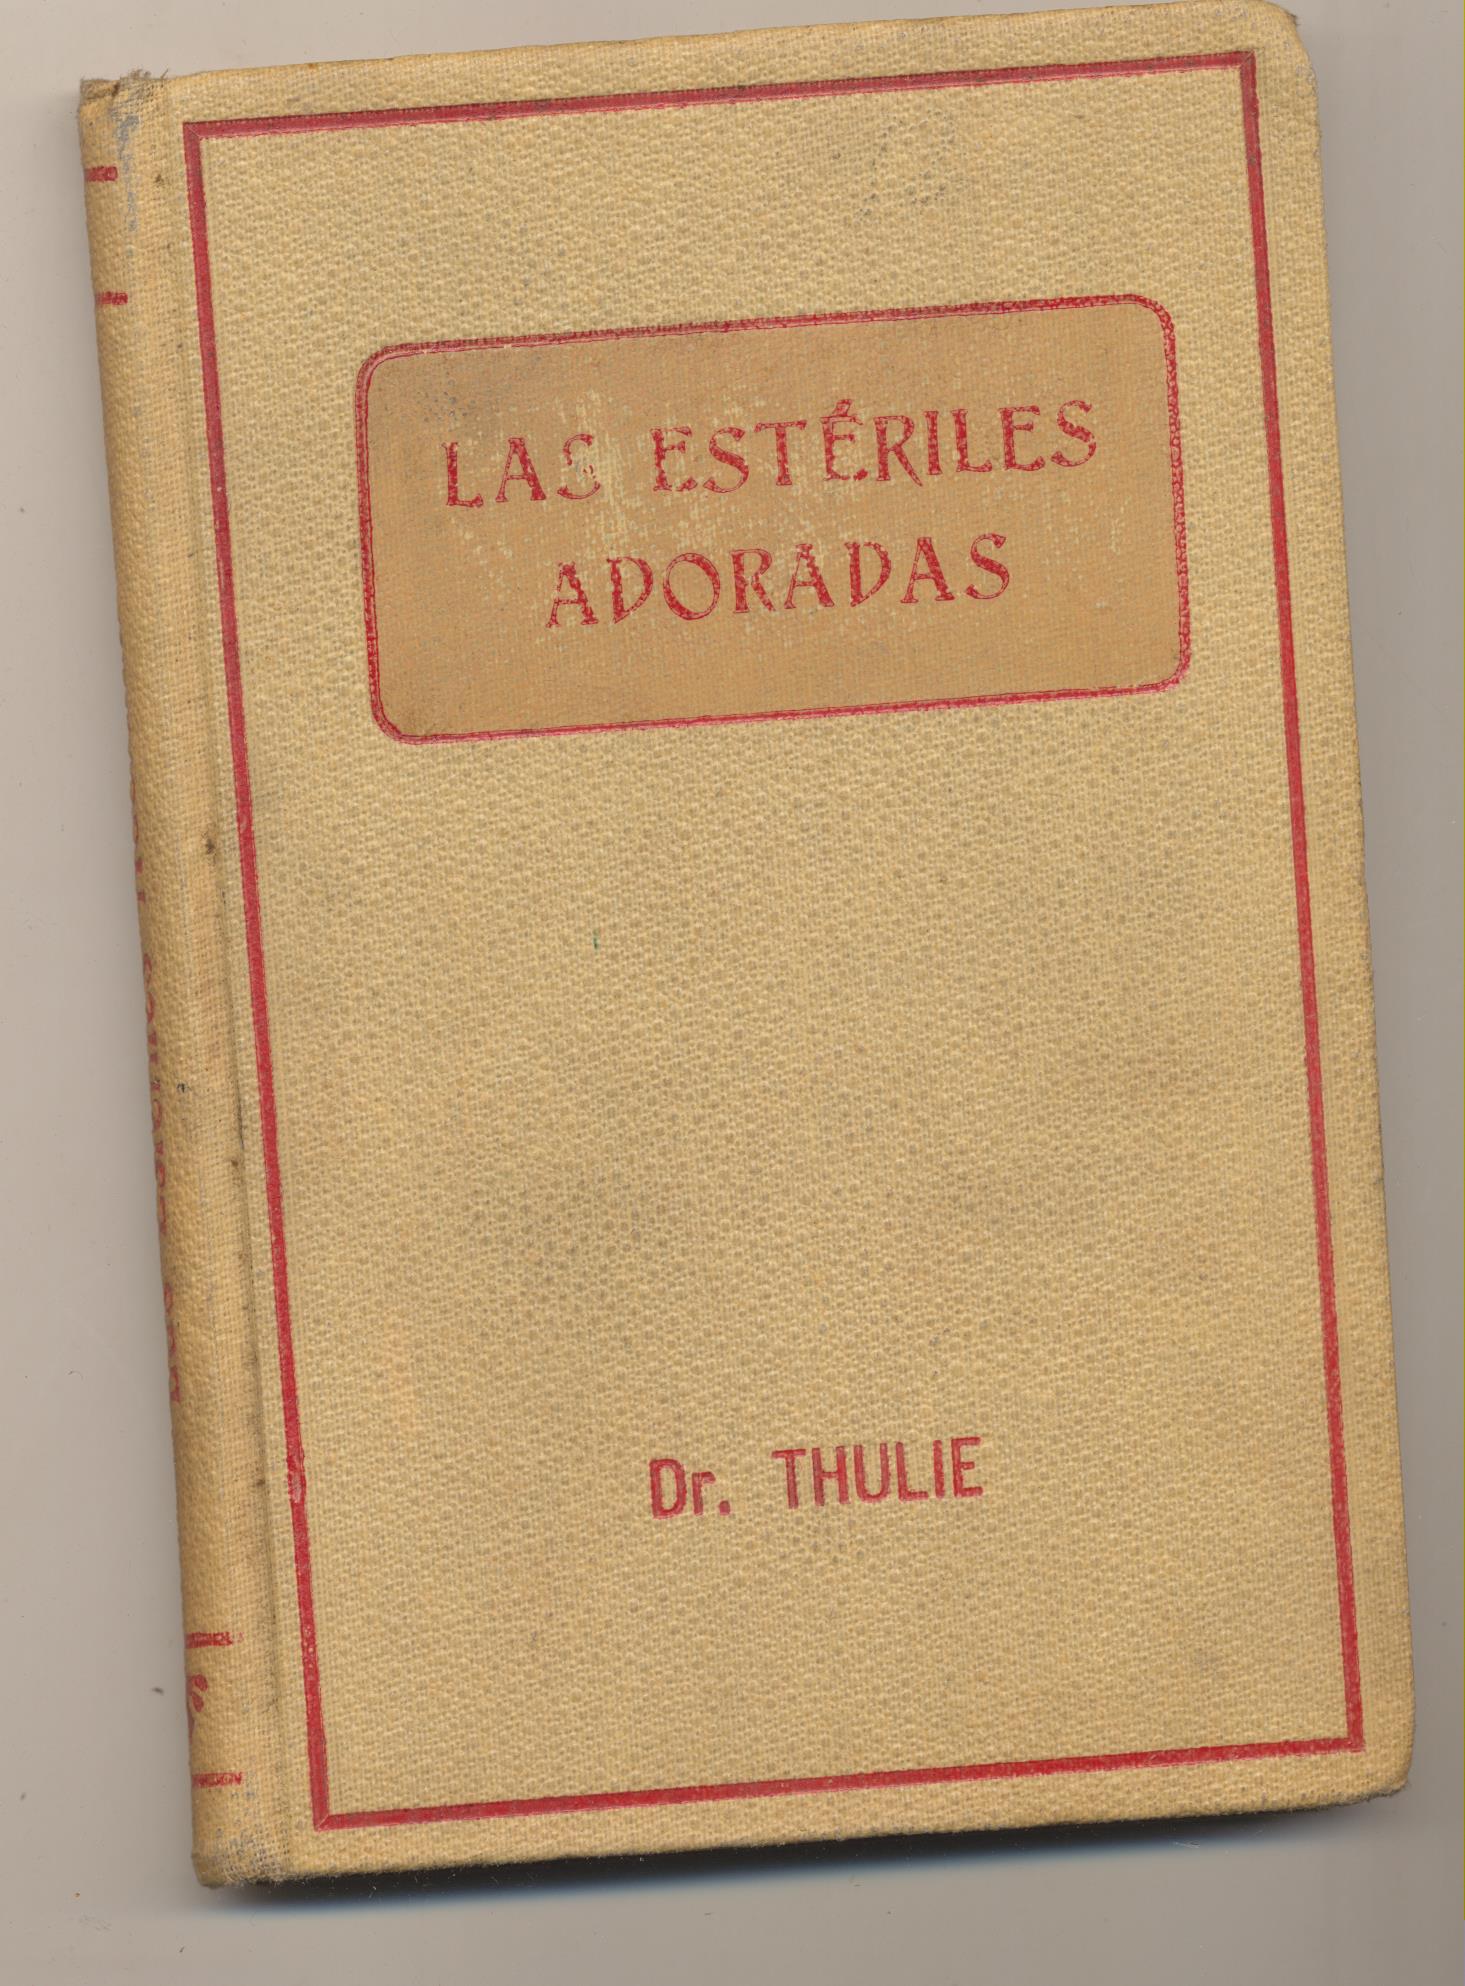 Dr. Thulie. Las estériles Adoradas. Biblioteca Popular Progreso. Barcelona 1921